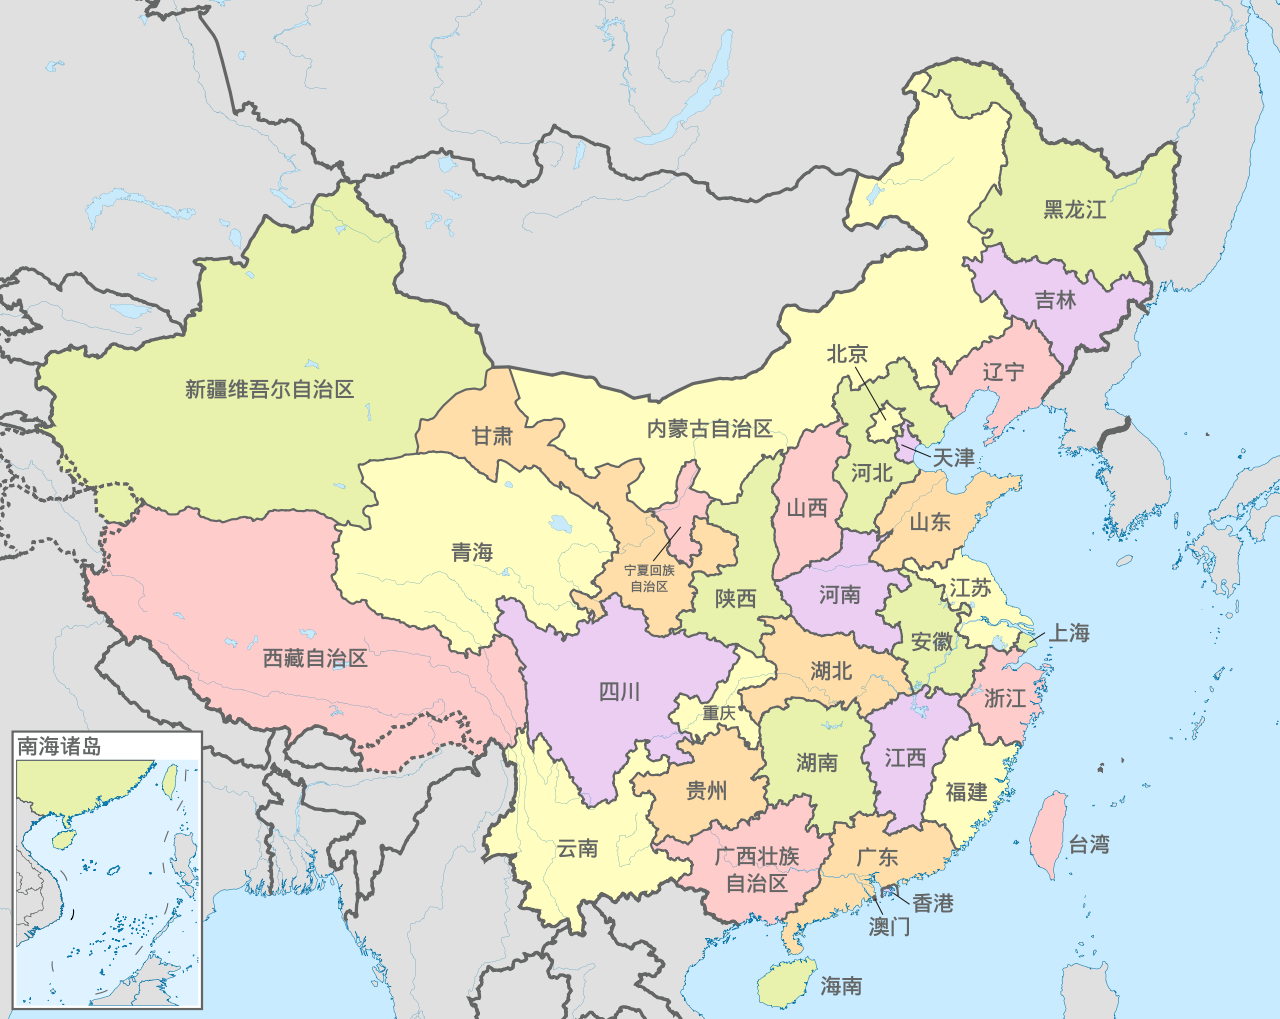 中国行政区划示意图